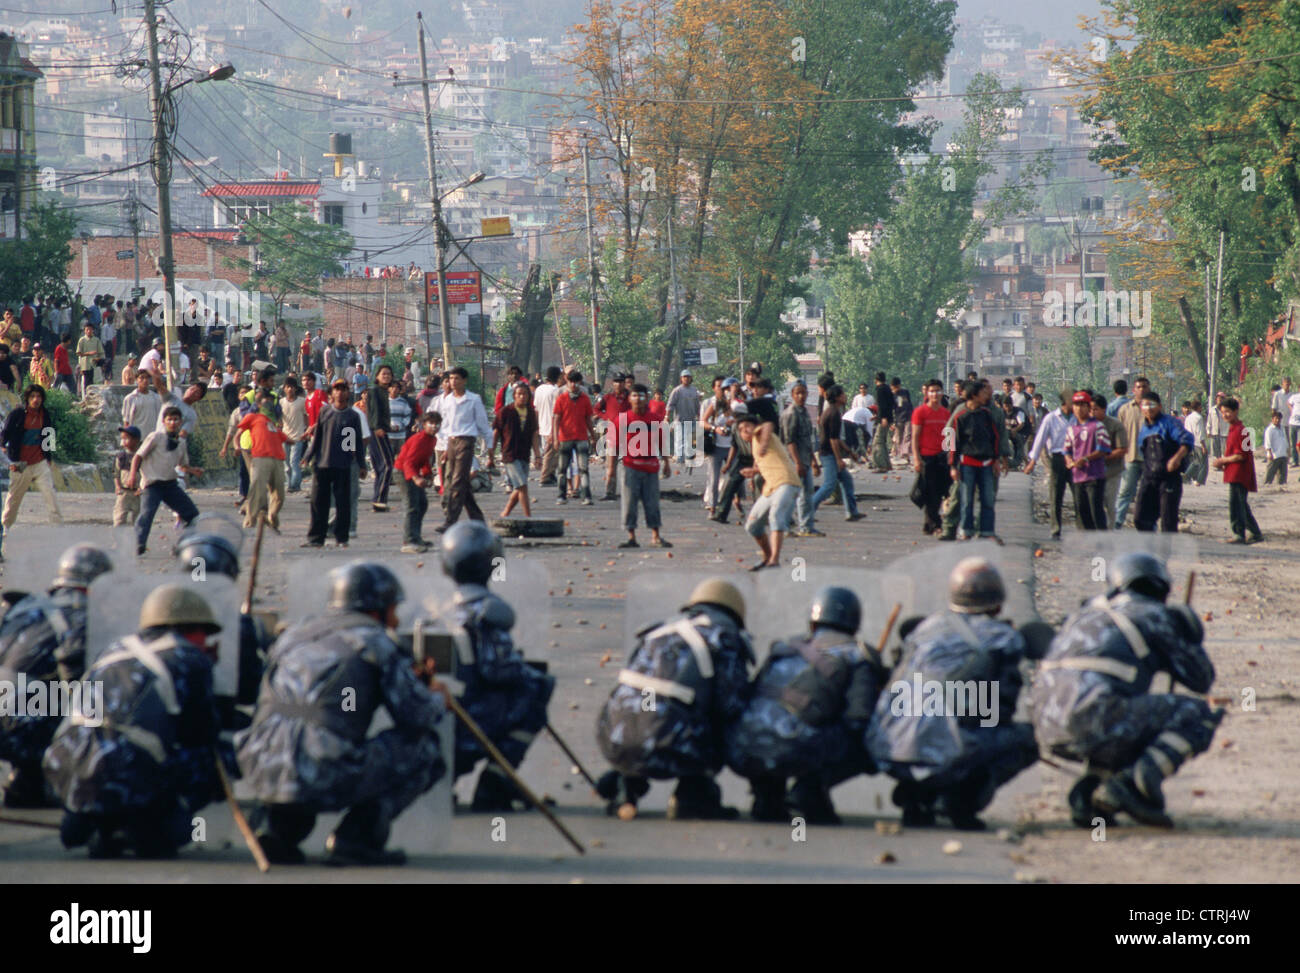 Randalierer kämpfen gegen Polizisten für mehr Demokratie (Nepal) Stockfoto